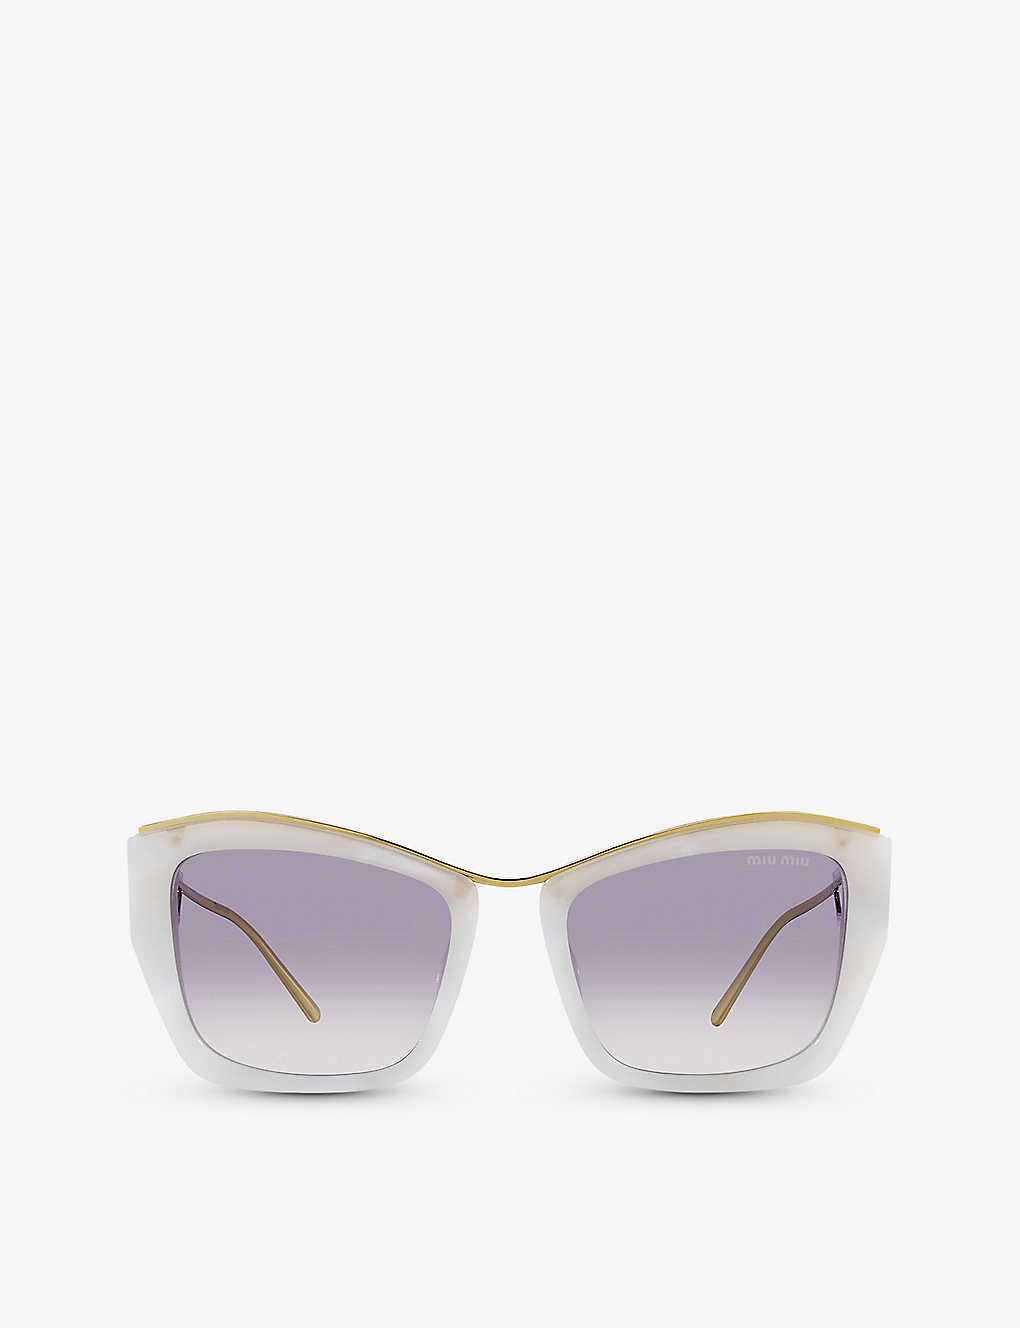 Miu Miu Womens White Mu 02ys Cat-eye Acetate Sunglasses